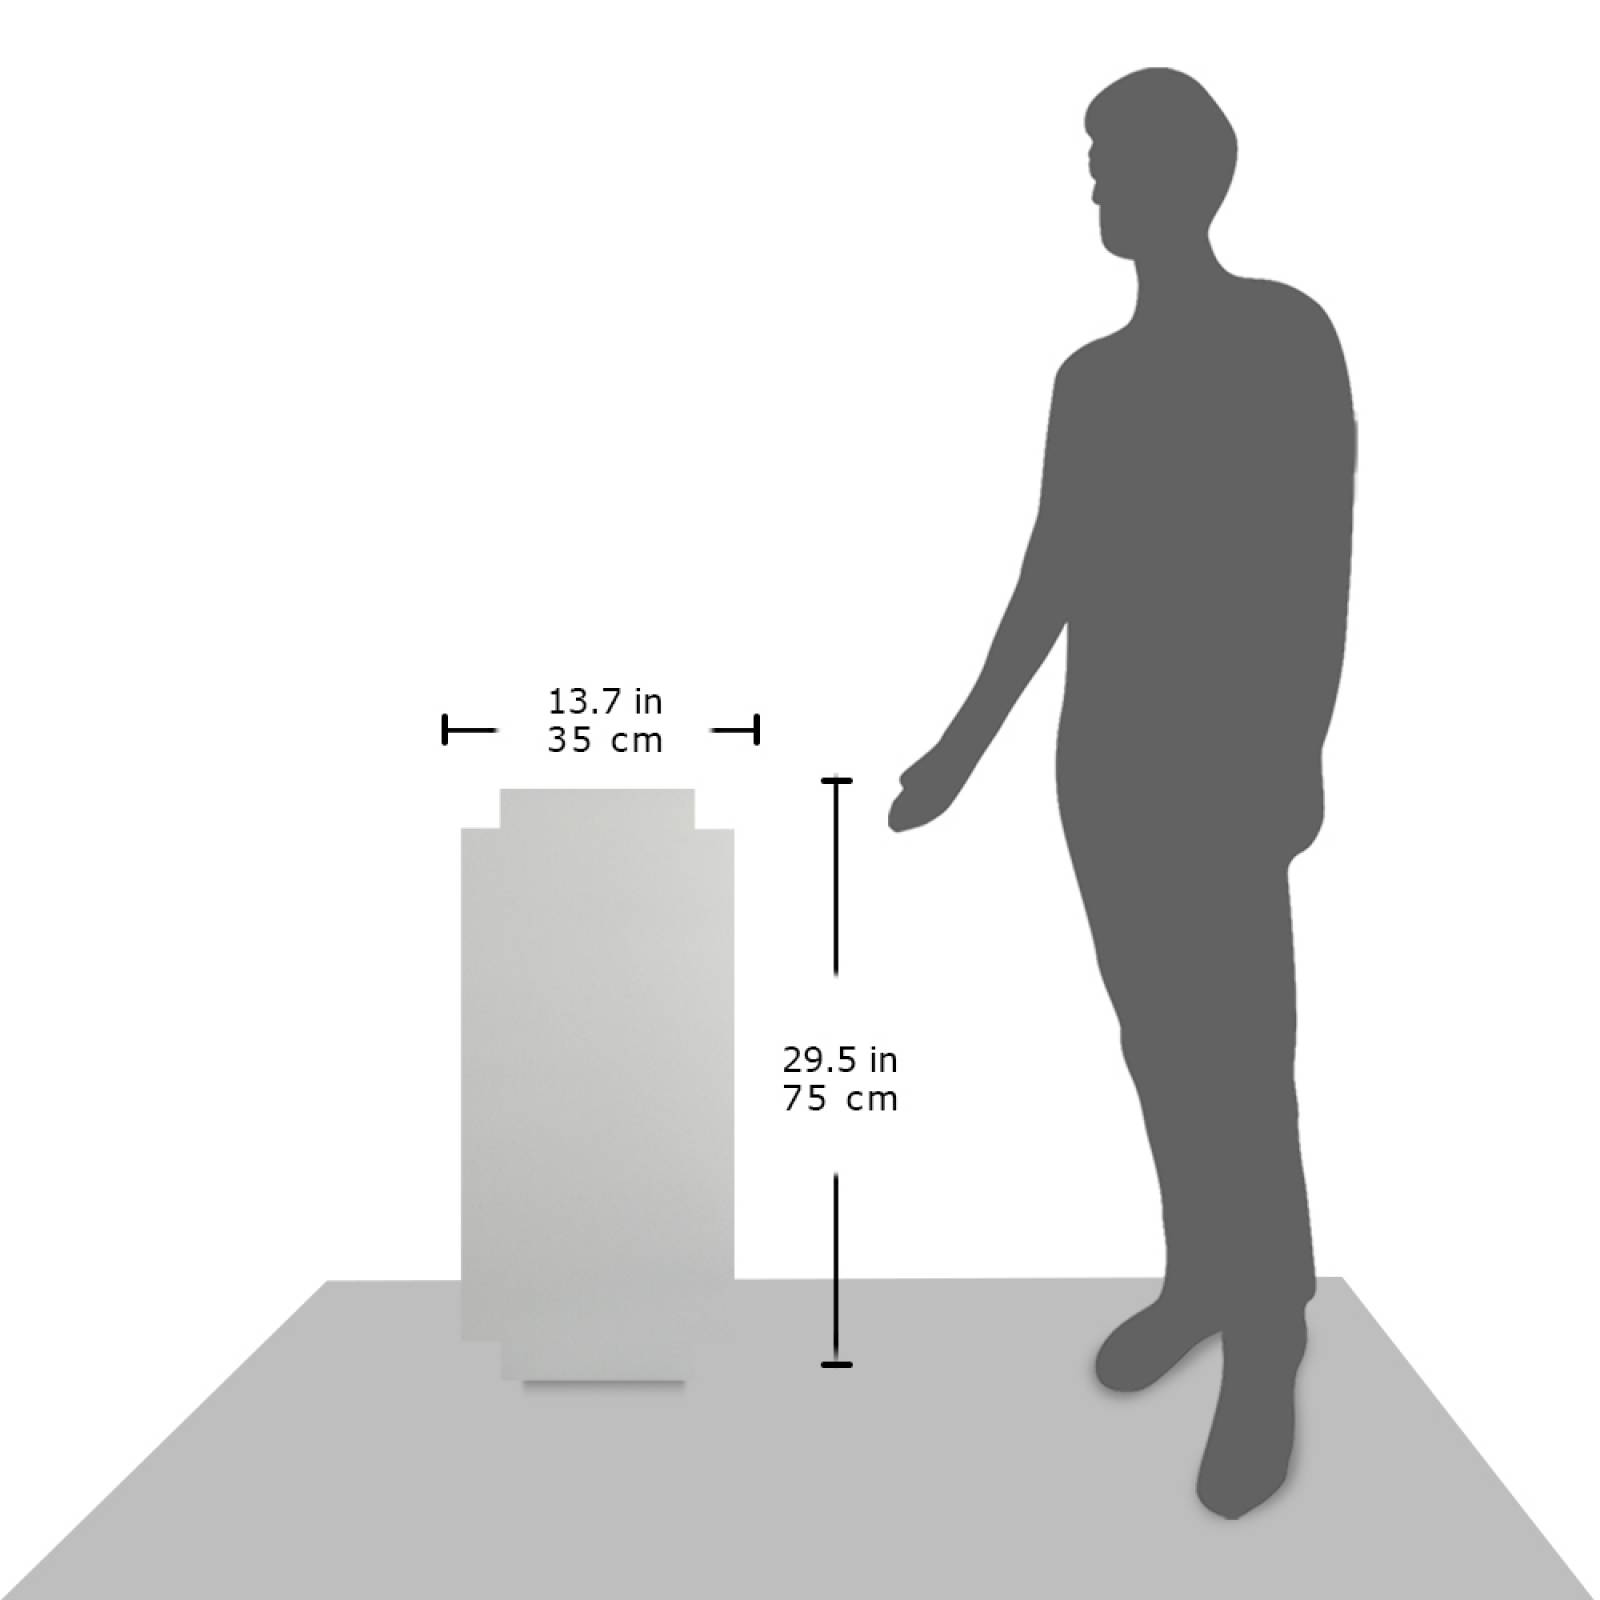 Aislante Cerámico Protector Térmico para Pared de 75 x 35 cm Blanco, Paquete 3 Piezas, Mod: 6PTPP3Bl